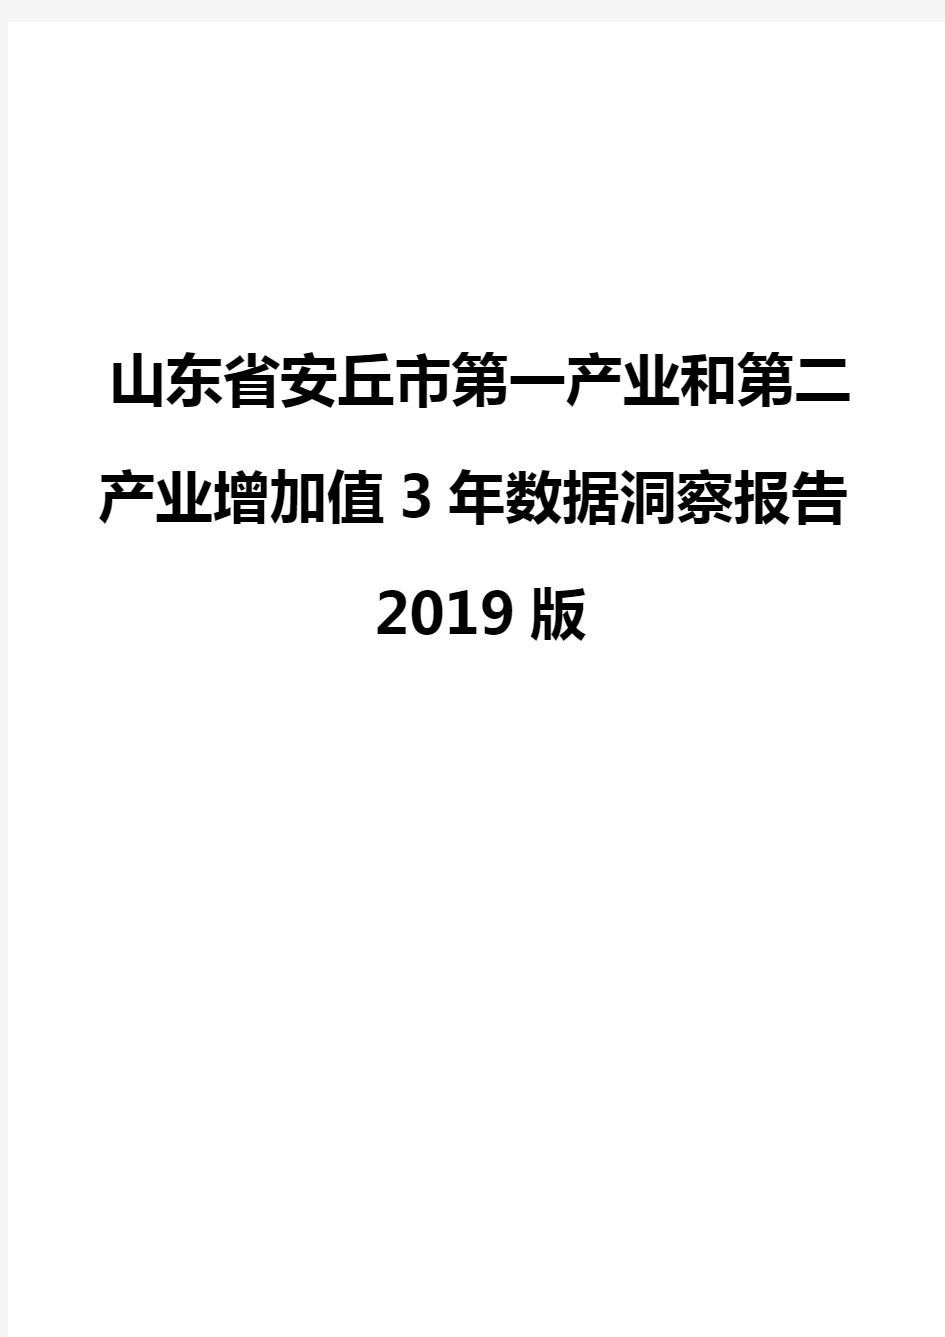 山东省安丘市第一产业和第二产业增加值3年数据洞察报告2019版